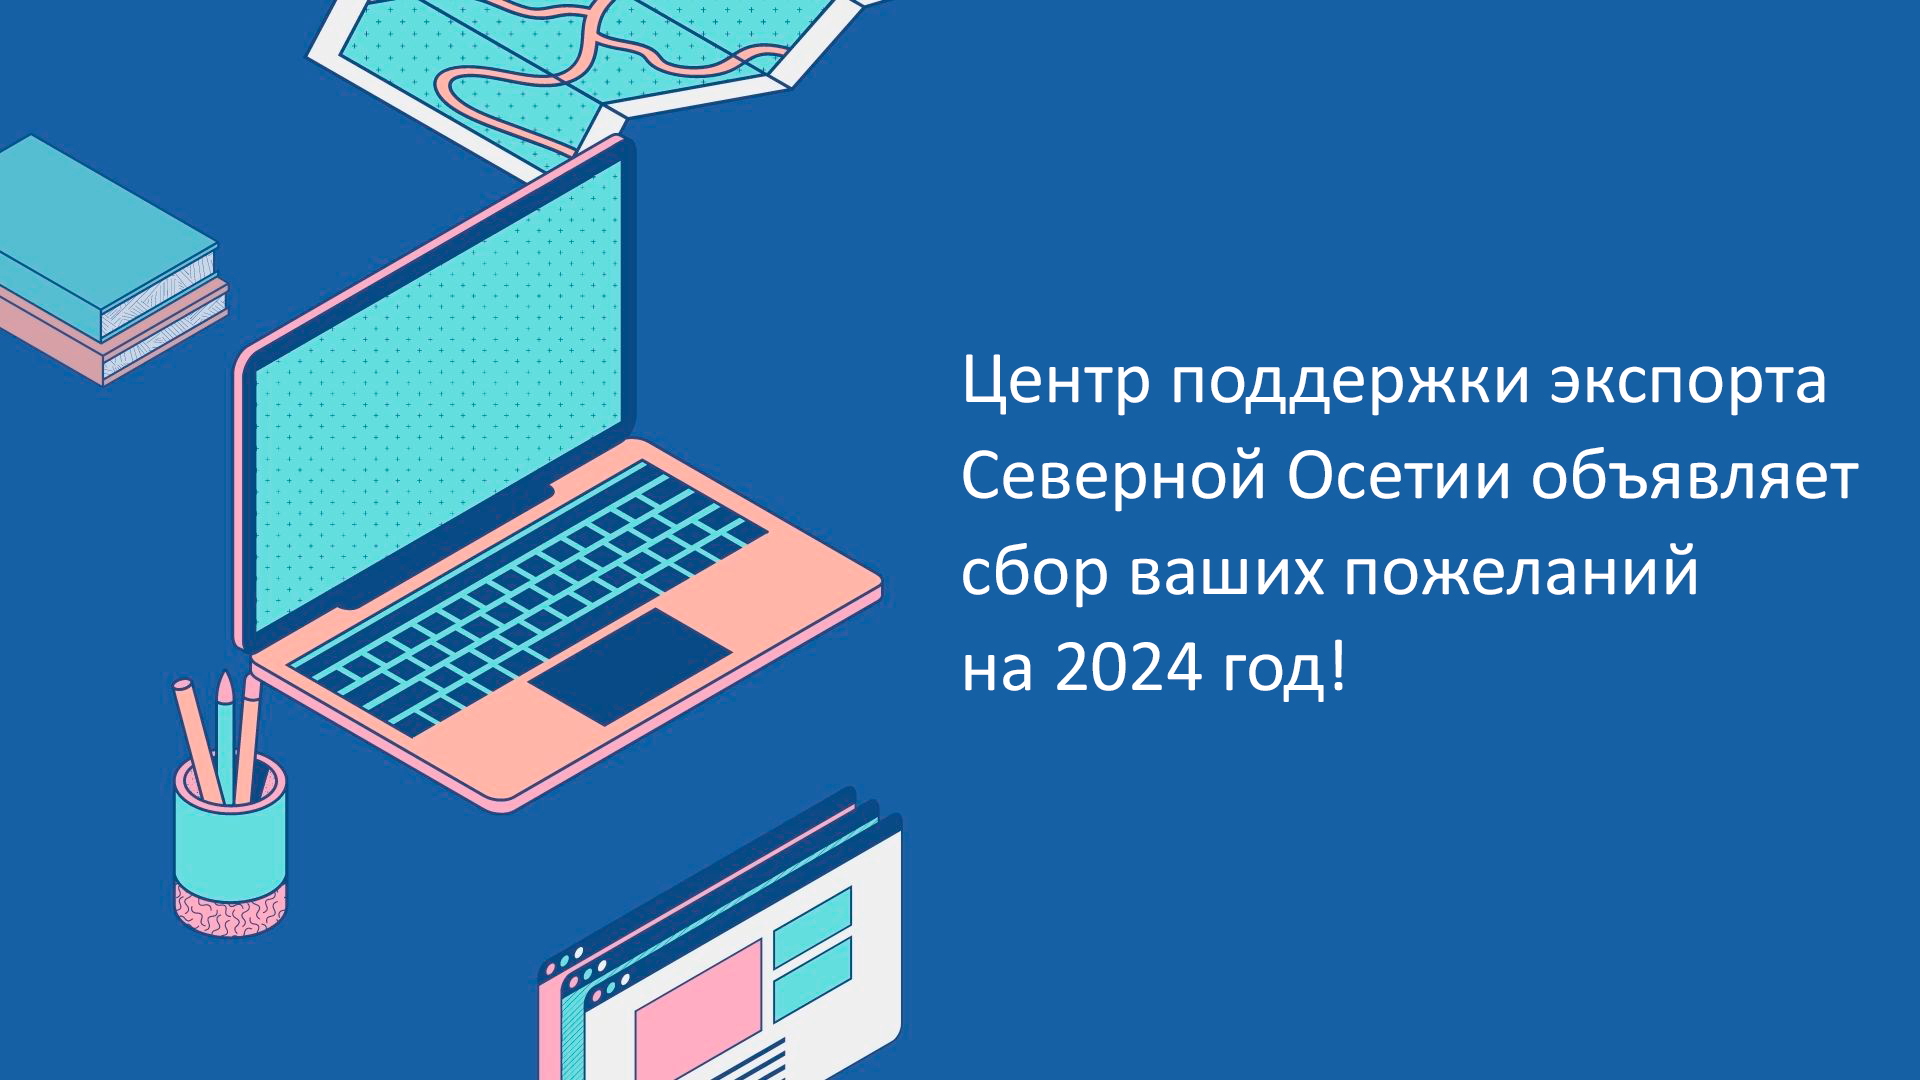 Центр поддержки экспорта Северной Осетии объявляет сбор ваших пожеланий на 2024 год!